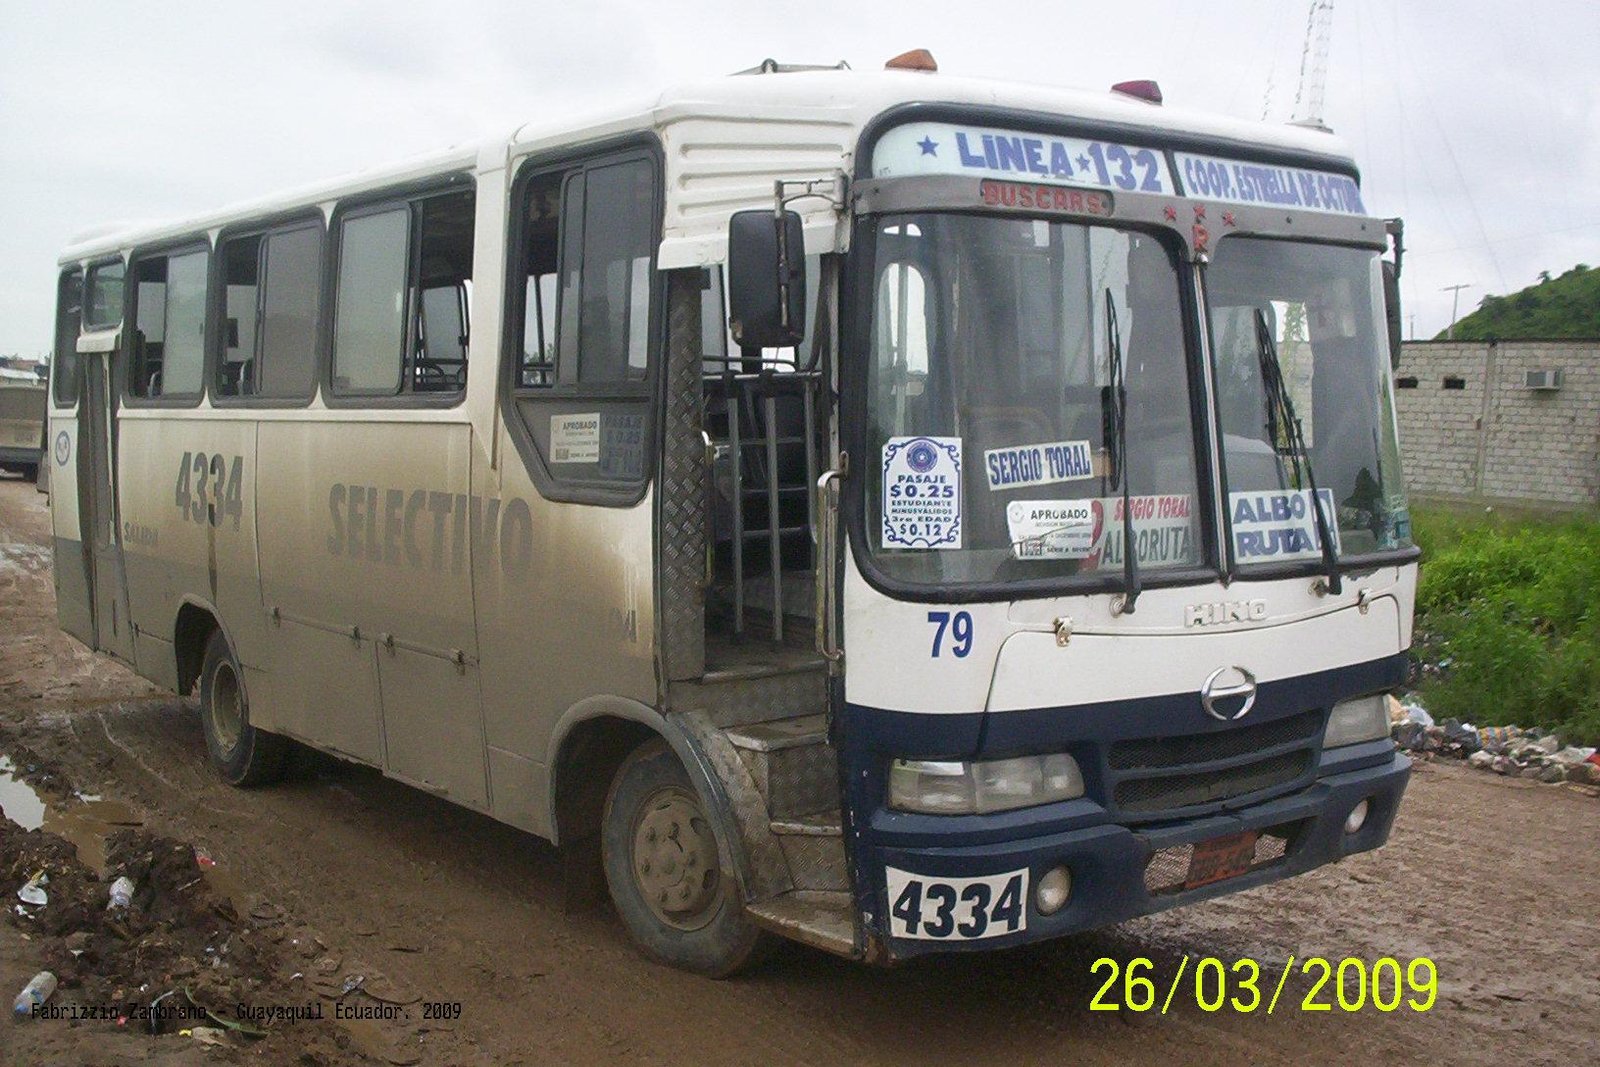 Hino FB 4 - Buscars - Estrella de Octubre
Línea 132 (Guayaquil), unidad 79, 4334

cooperativa de Transporte Urbano ESTRELLA DE OCTUBRE
